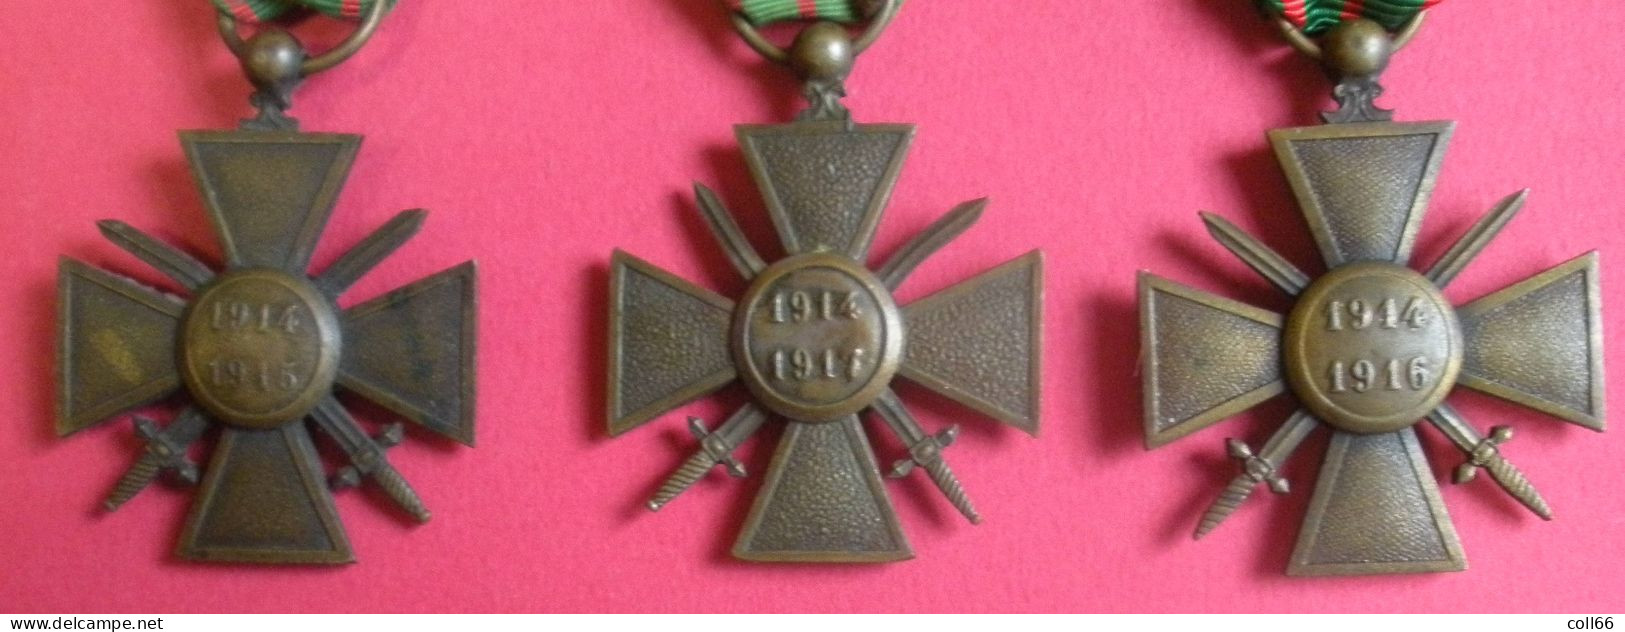 Ww1 Décorations Médailles 3 Croix De Guerre Avec Distinctions De Poilus 1914-1915 1914-1916 1914-1917 & Rubans - Frankreich